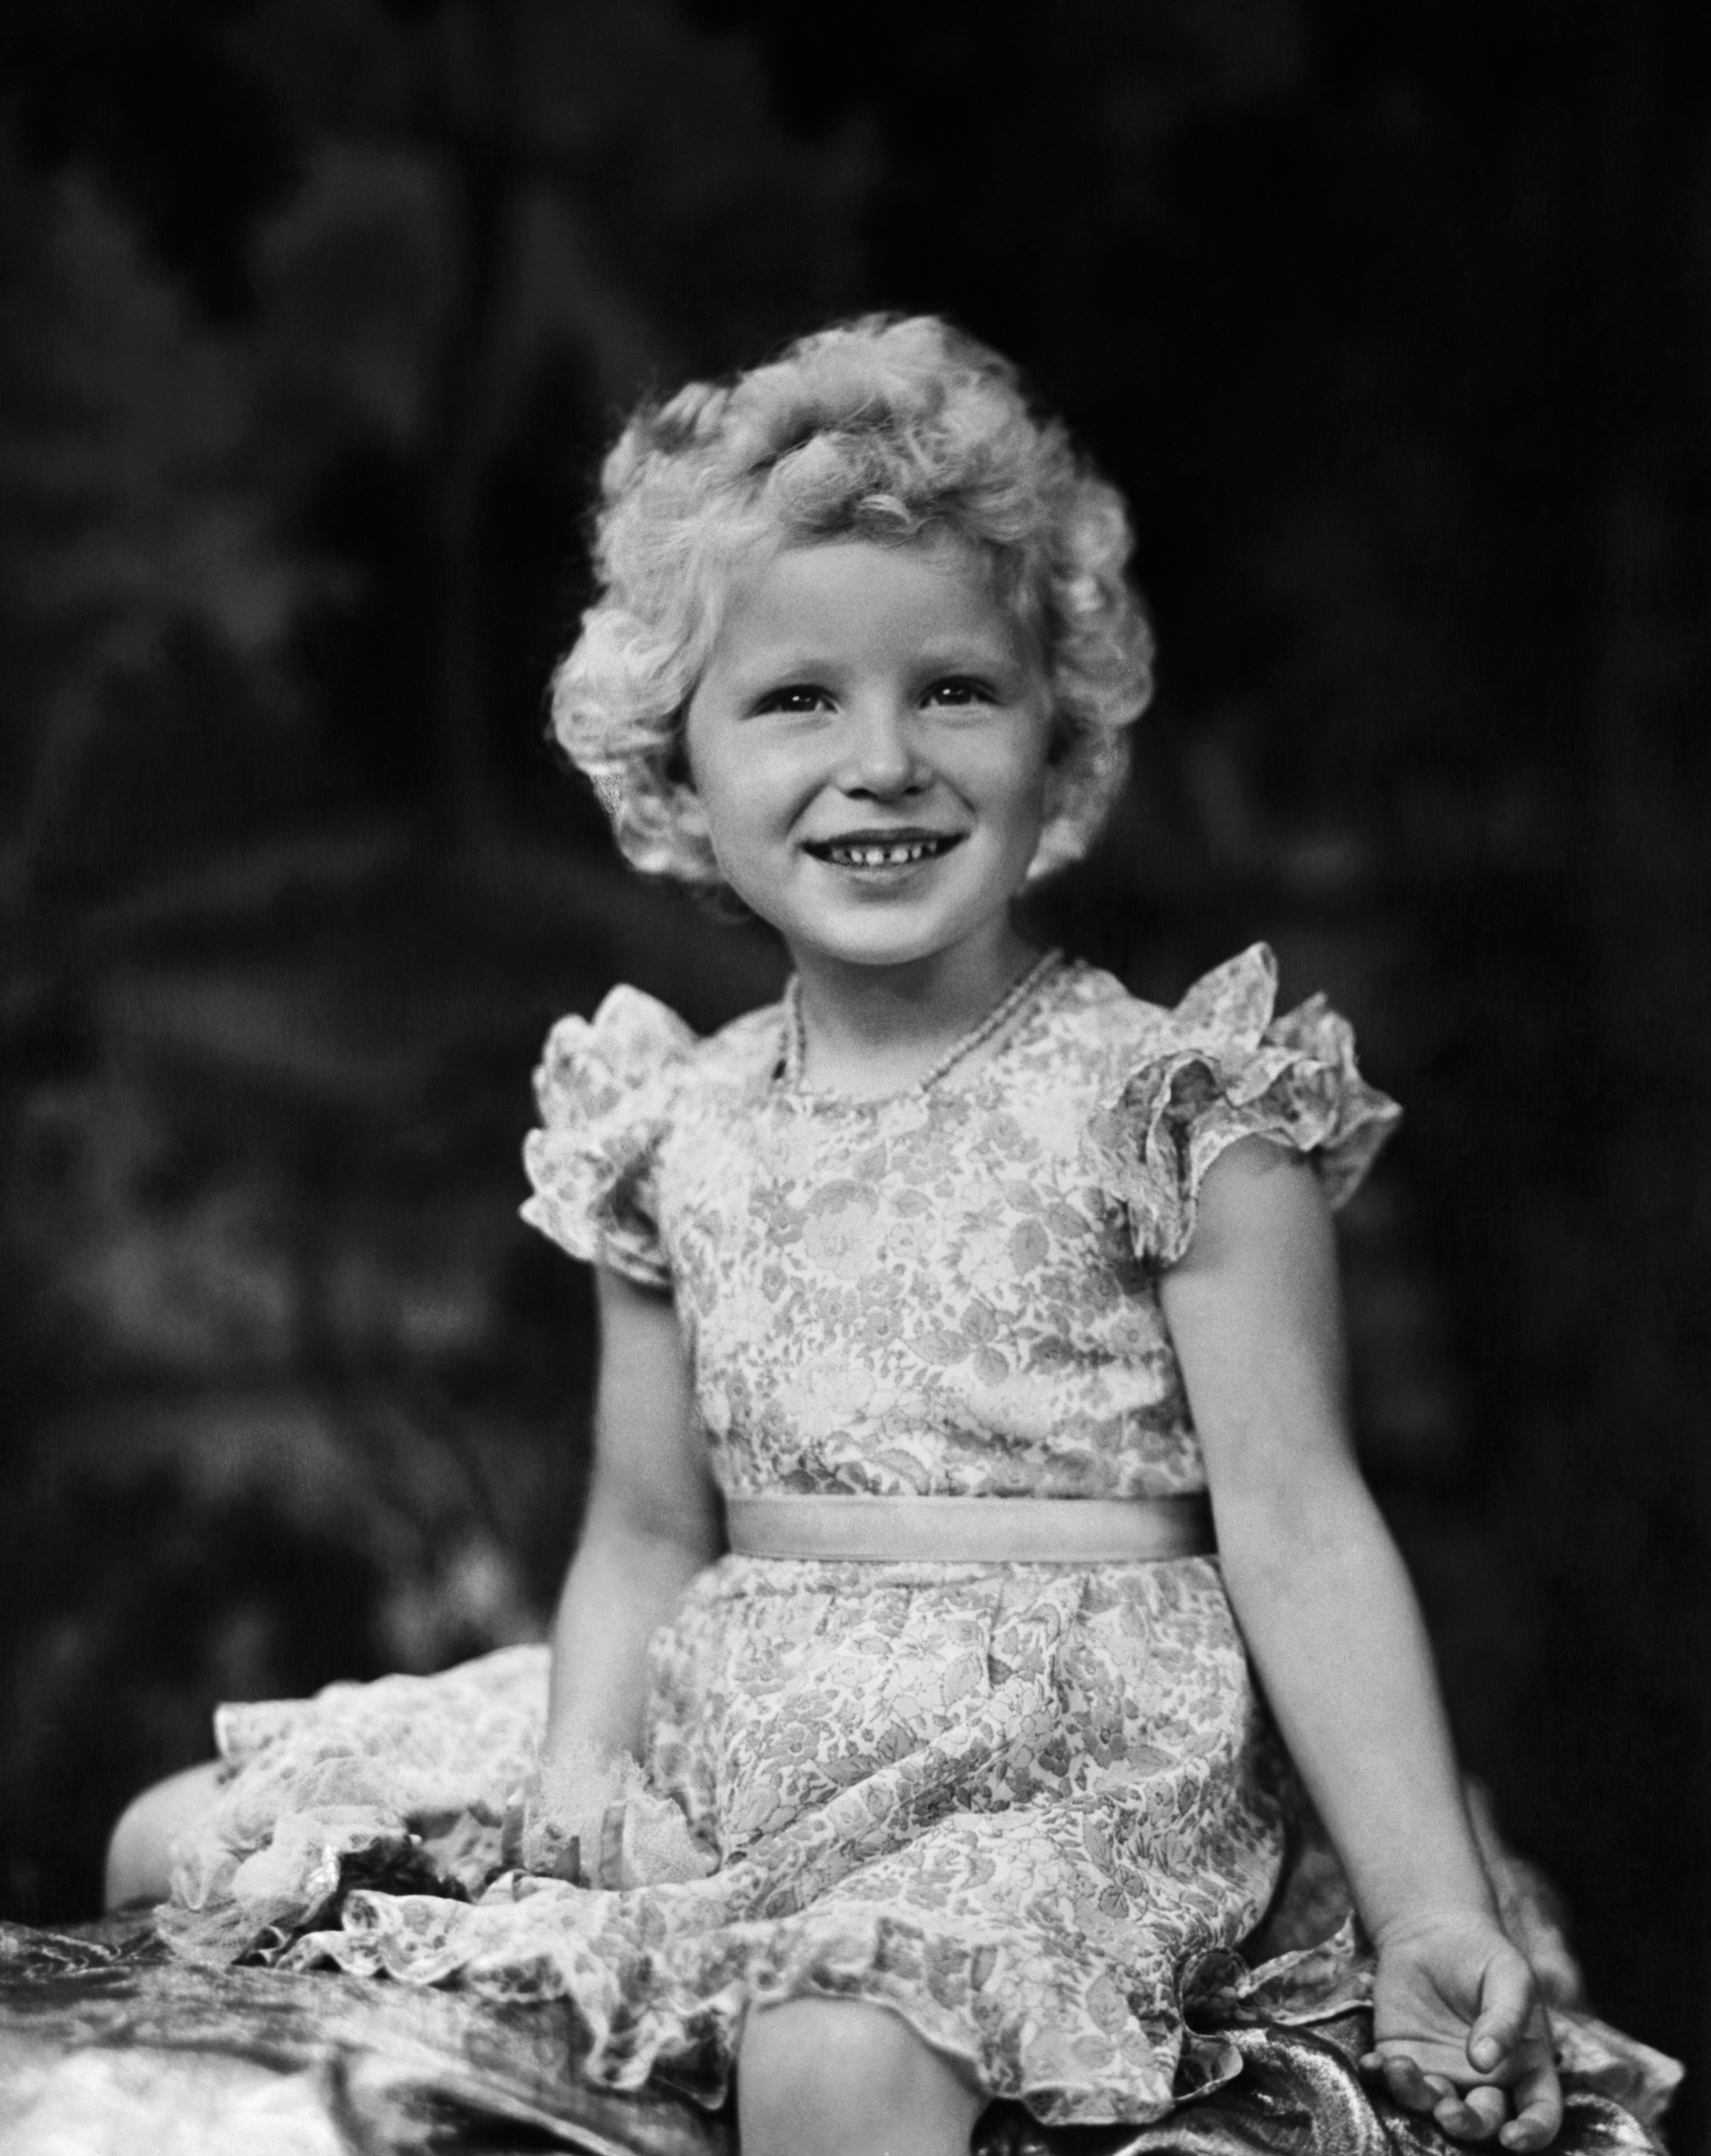 Ιστορικές εικόνες της βασίλισσας Ελισάβετ Β'.  Σε ηλικία 10 ετών έγινε διάδοχος του βρετανικού θρόνου - Εικόνα 6